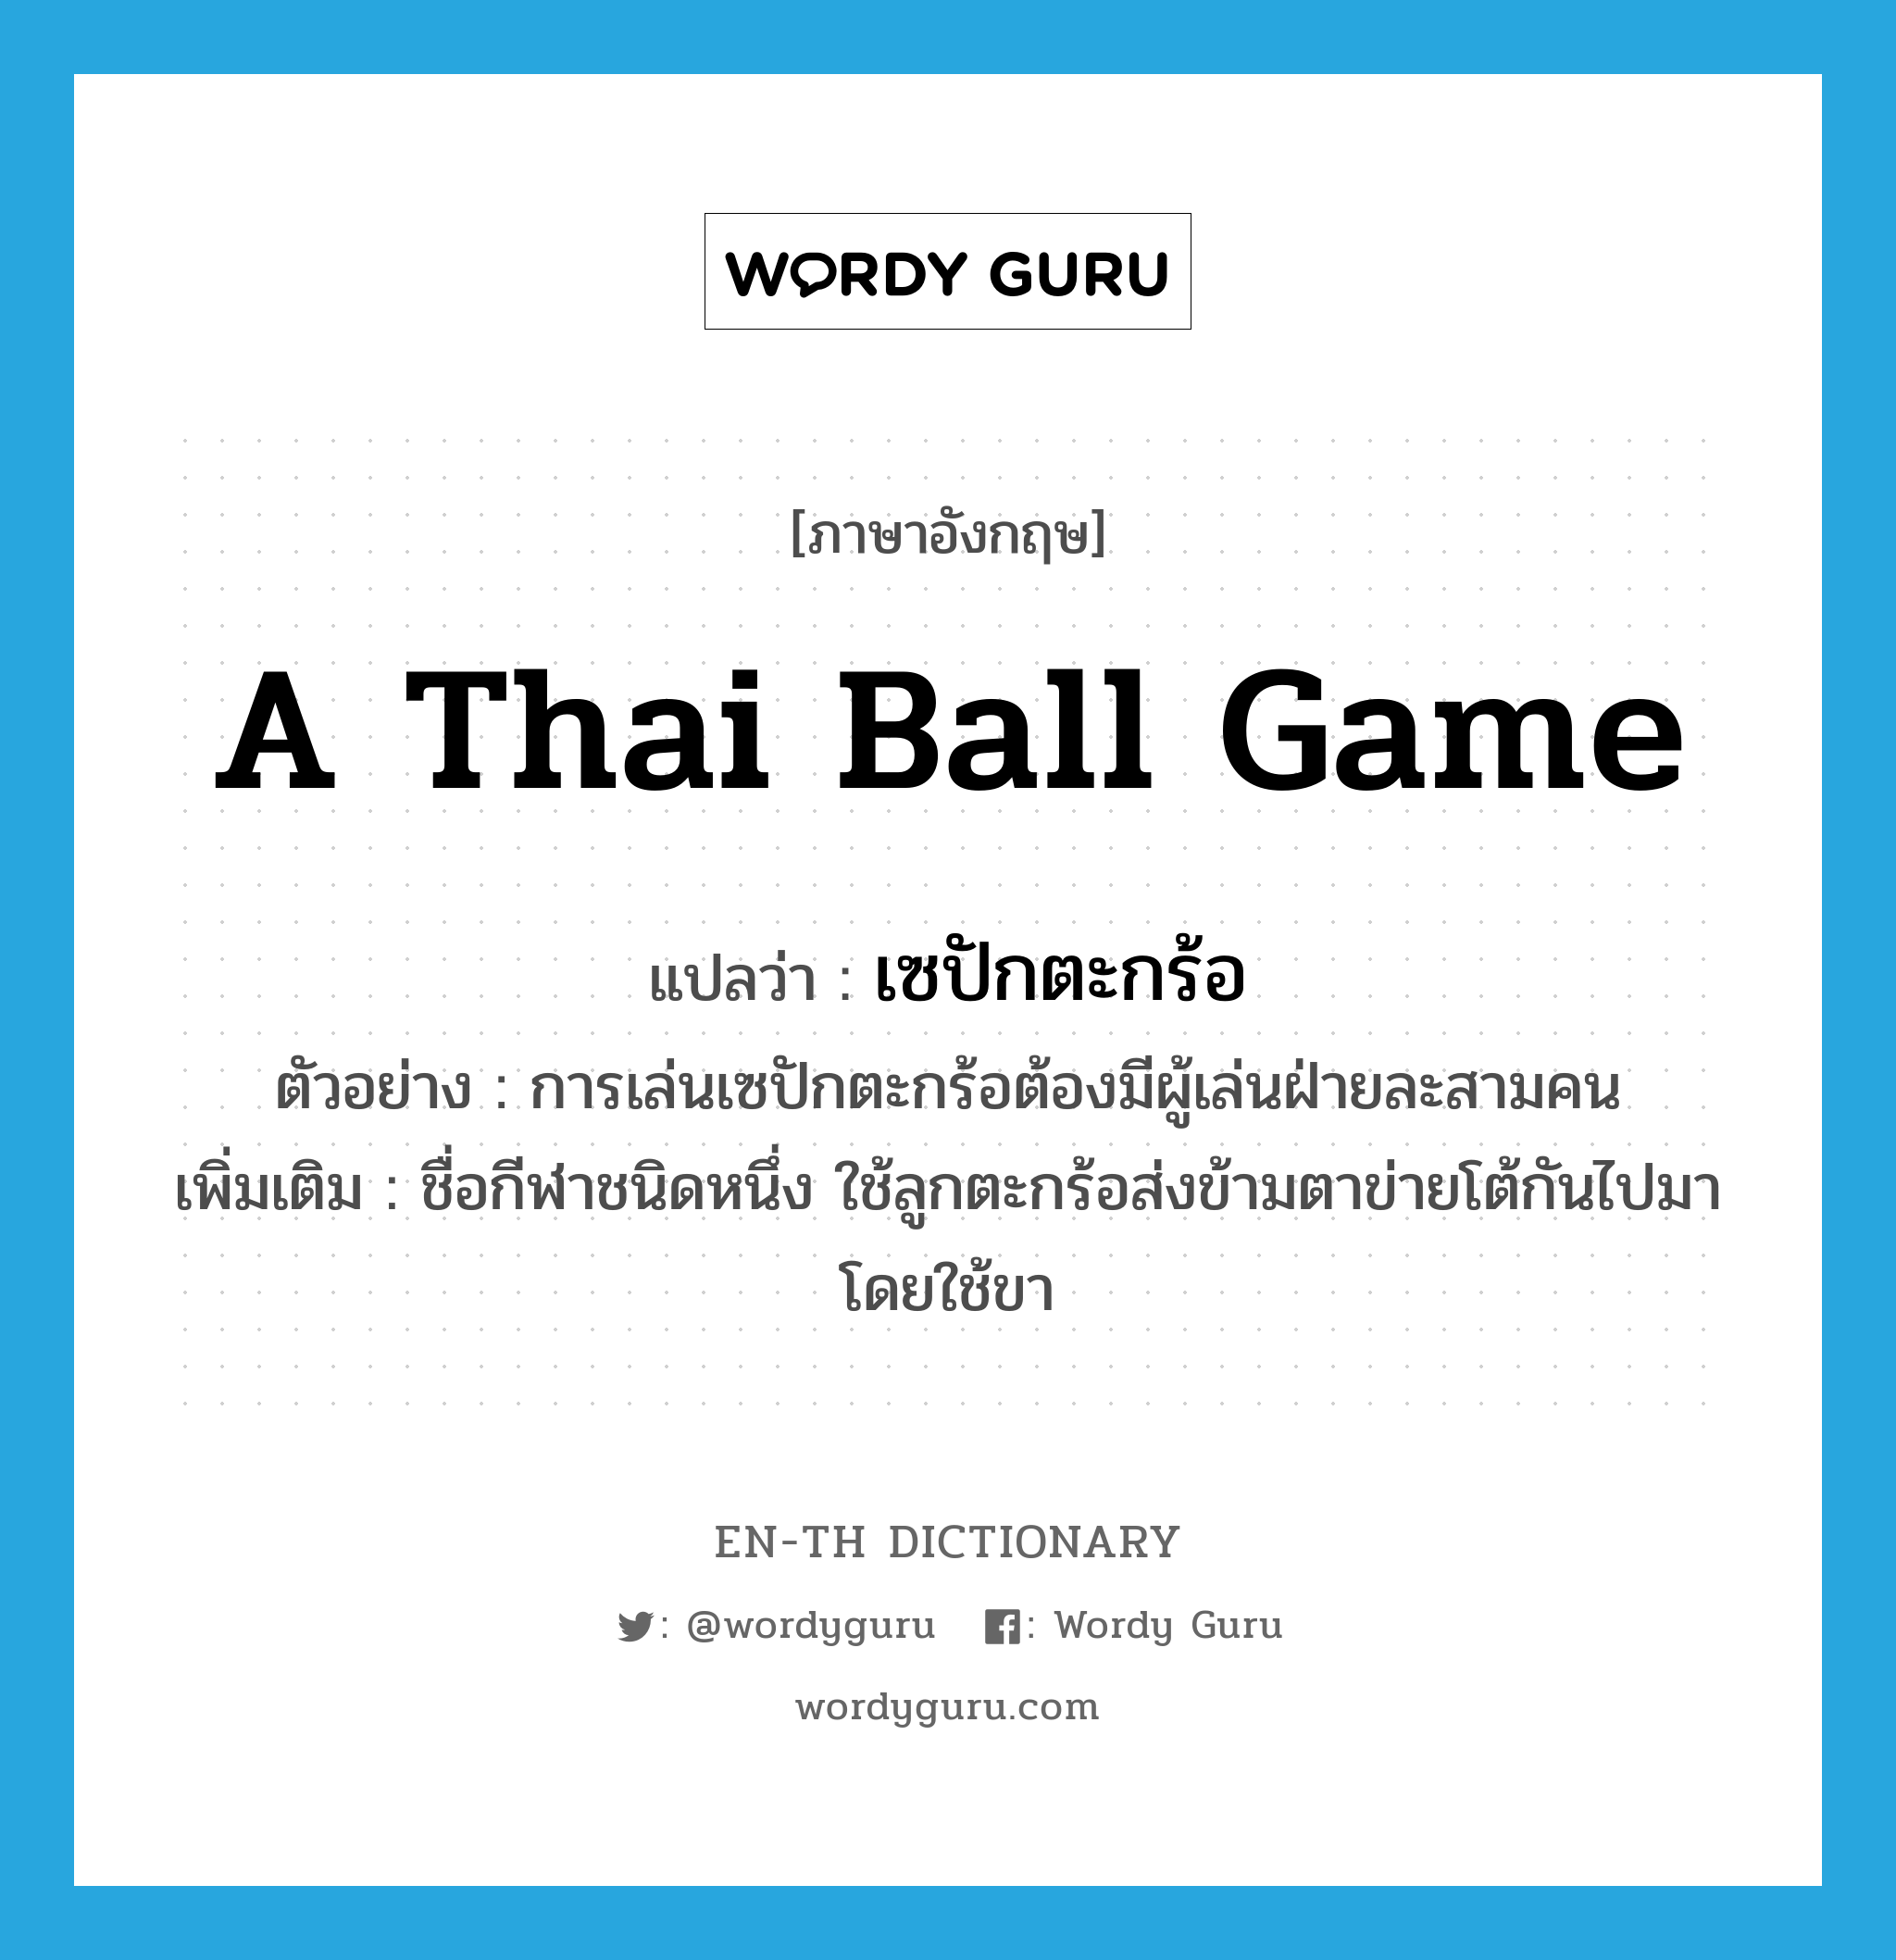 a Thai ball game แปลว่า?, คำศัพท์ภาษาอังกฤษ a Thai ball game แปลว่า เซปักตะกร้อ ประเภท N ตัวอย่าง การเล่นเซปักตะกร้อต้องมีผู้เล่นฝ่ายละสามคน เพิ่มเติม ชื่อกีฬาชนิดหนึ่ง ใช้ลูกตะกร้อส่งข้ามตาข่ายโต้กันไปมา โดยใช้ขา หมวด N